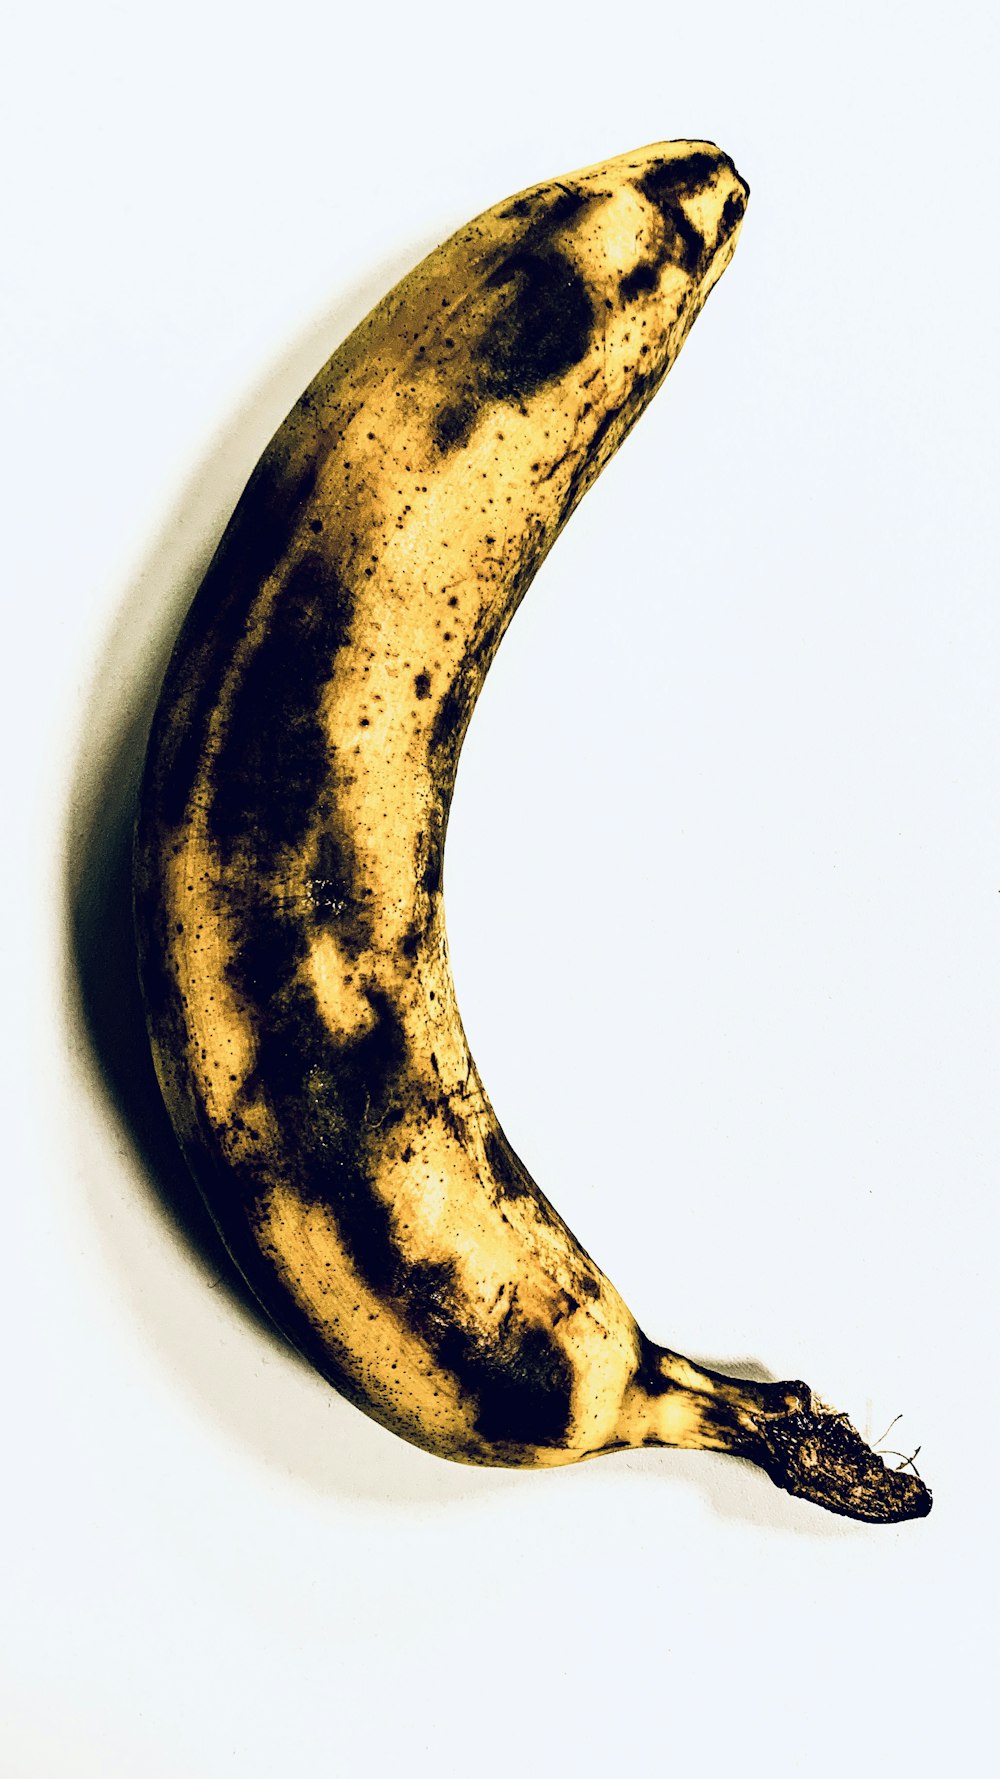 banana amarela na superfície branca